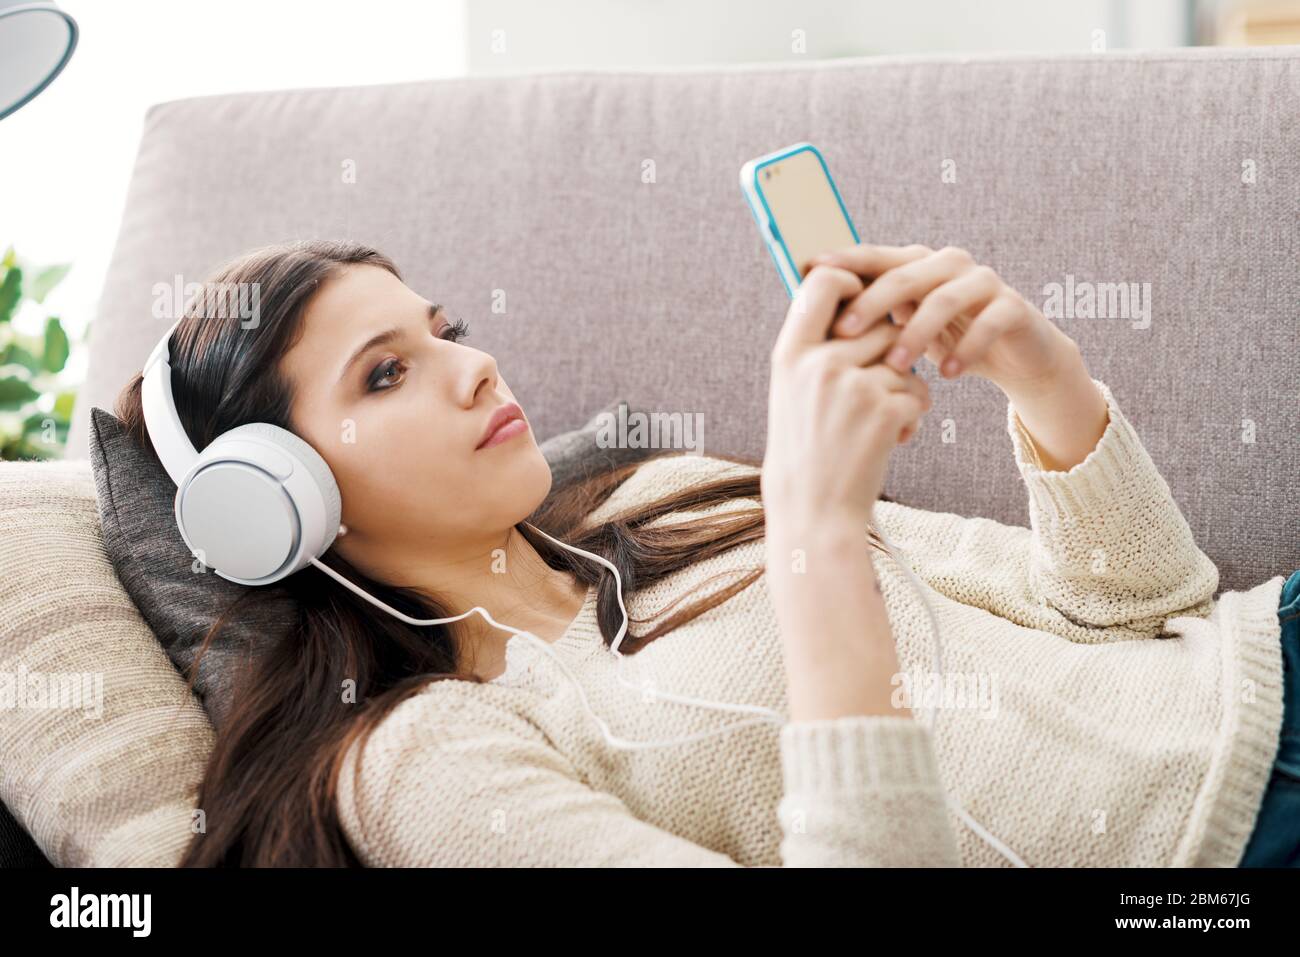 Atractiva chica relajado en el sofá y utilizar aplicaciones en su smartphone, ella está usando audífonos Foto de stock